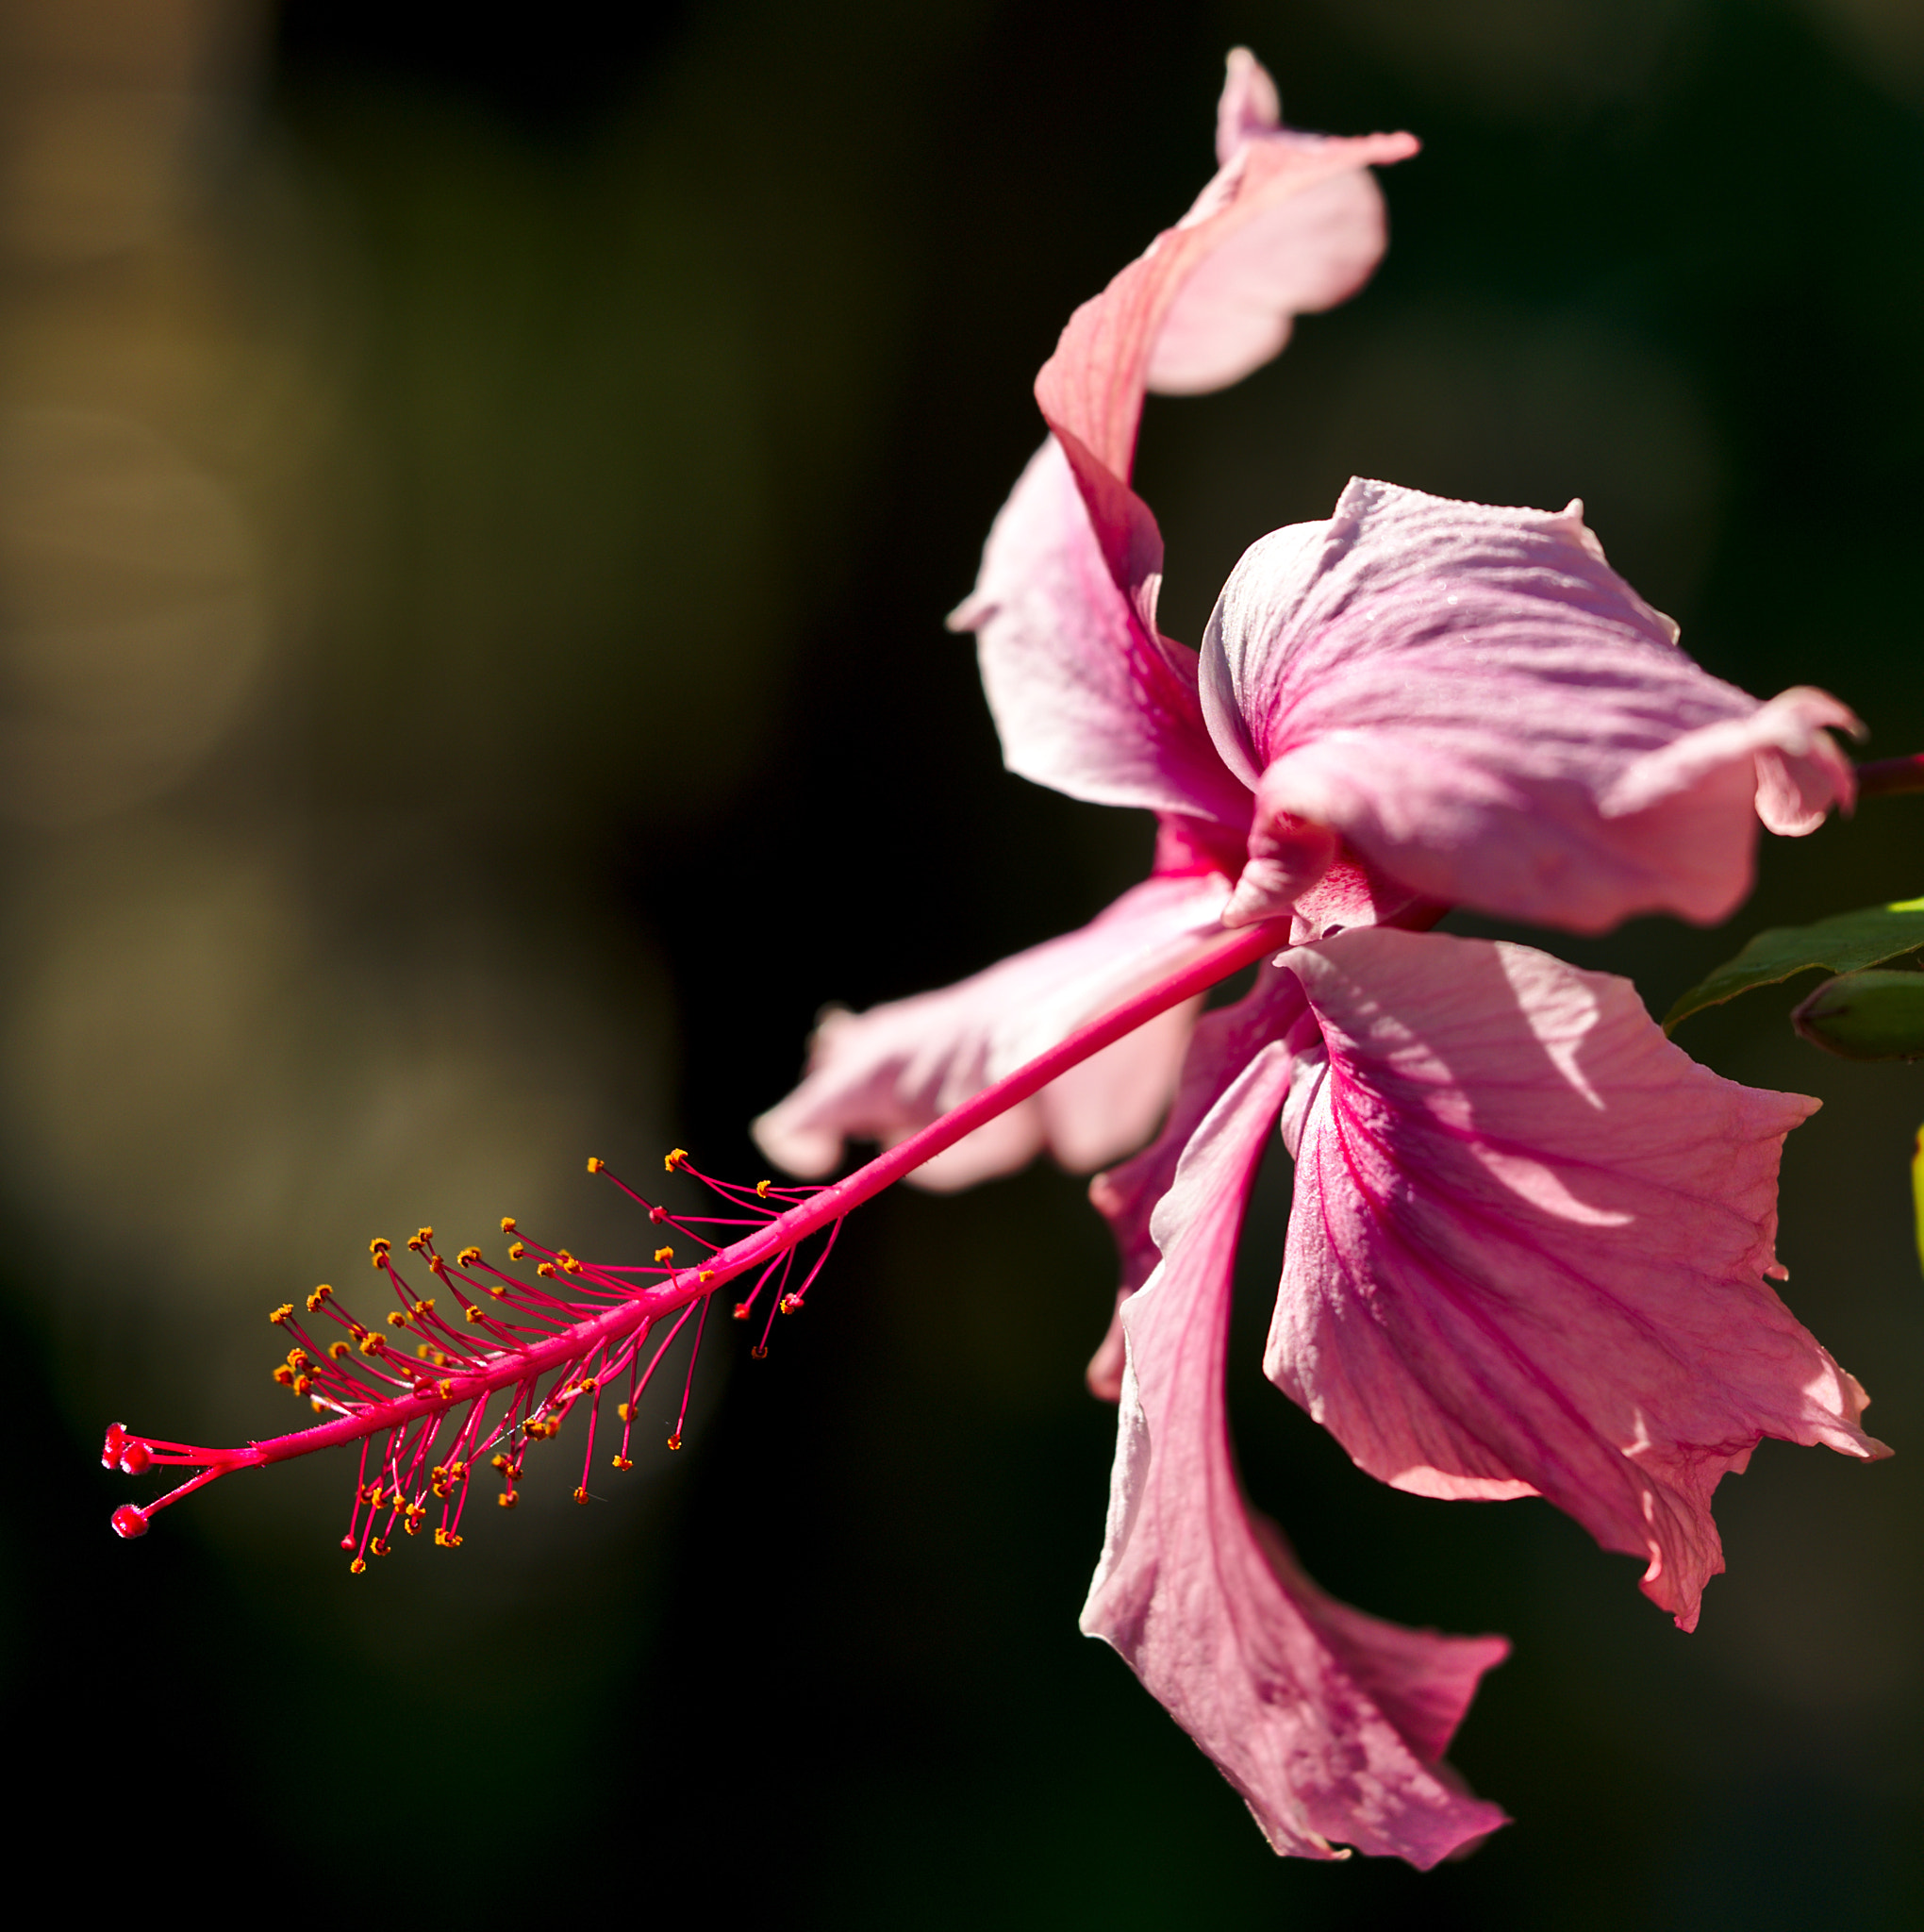 Nikon D810 + Manual Lens No CPU sample photo. Pink hibiscus photography